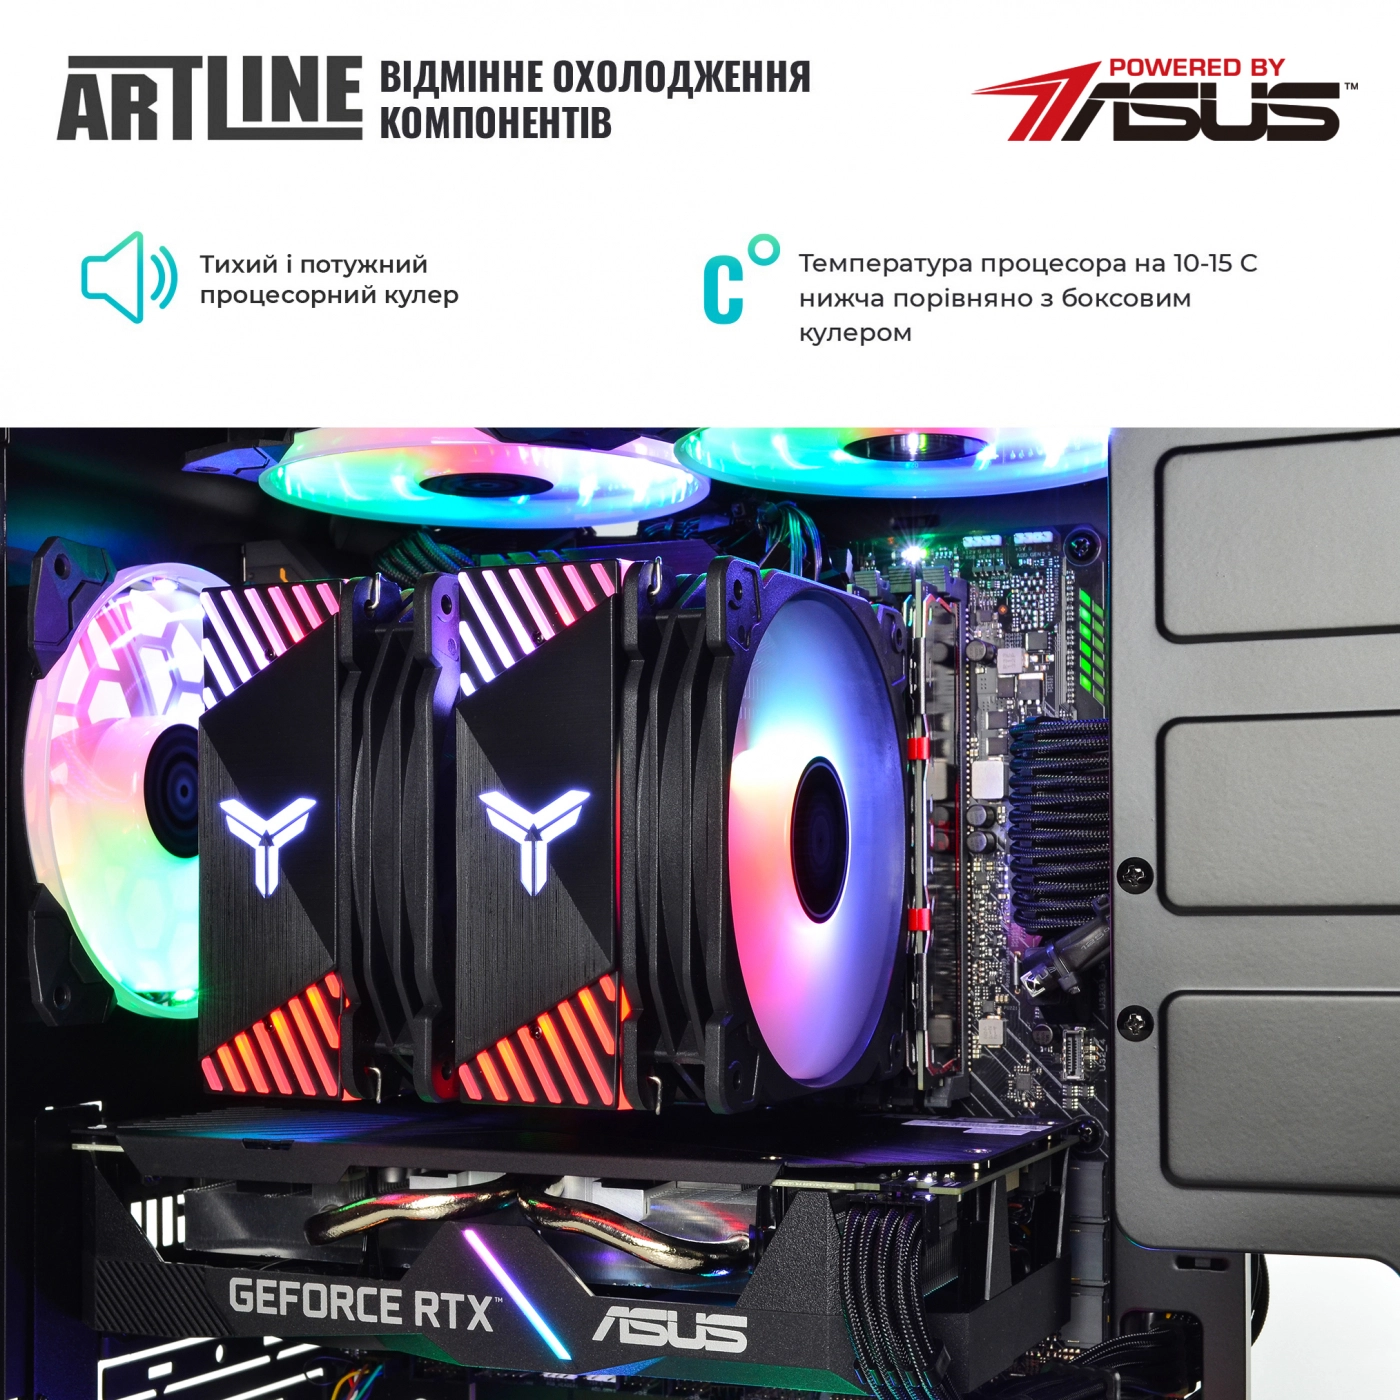 Купить Компьютер ARTLINE Gaming X75v33 - фото 5